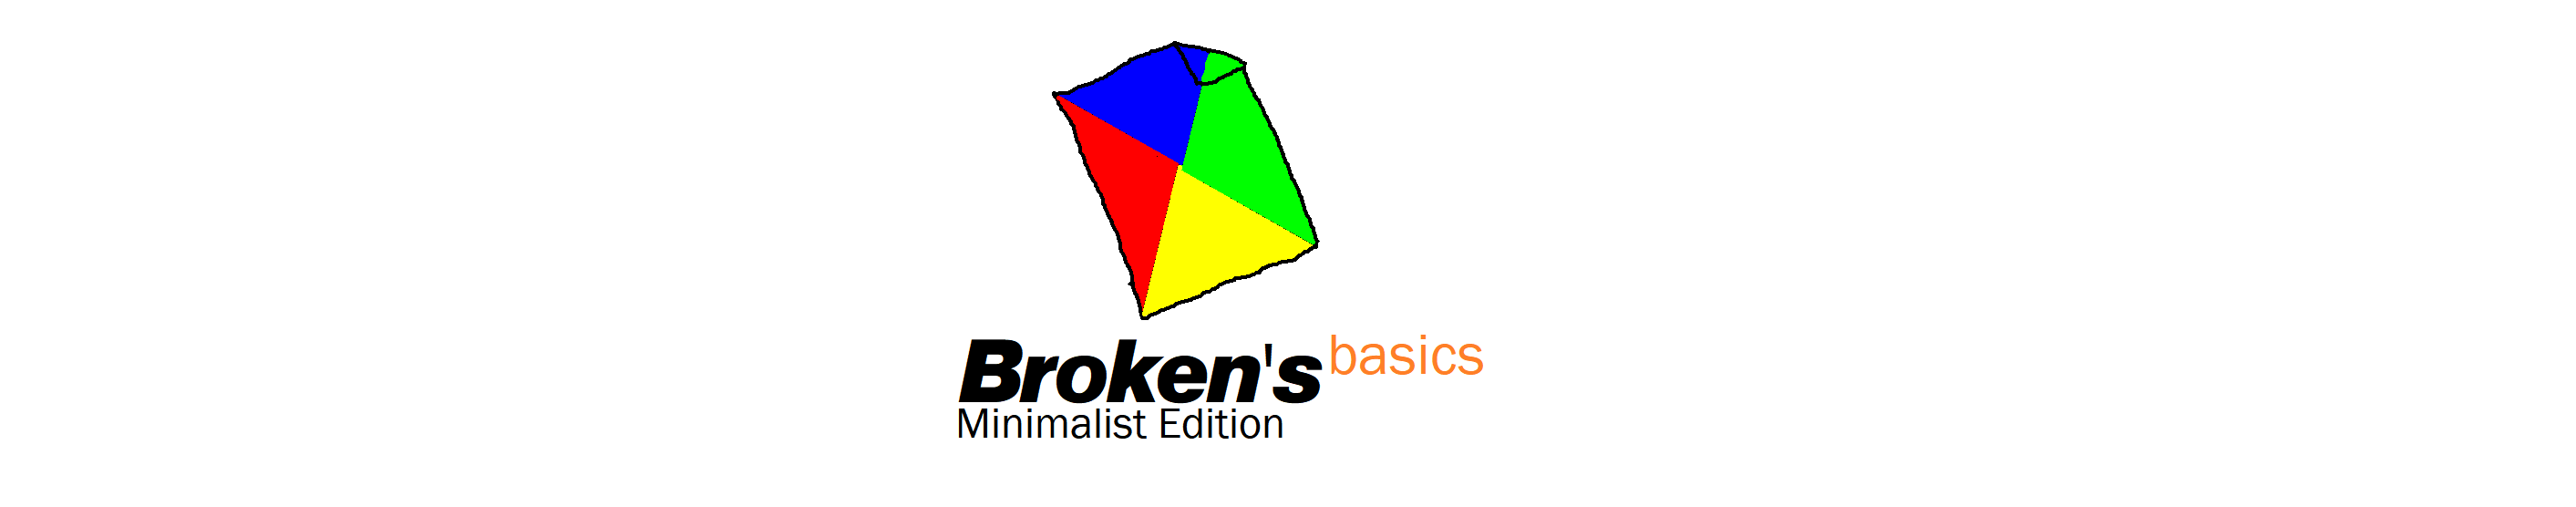 Broken's Basics Minimalist Edition